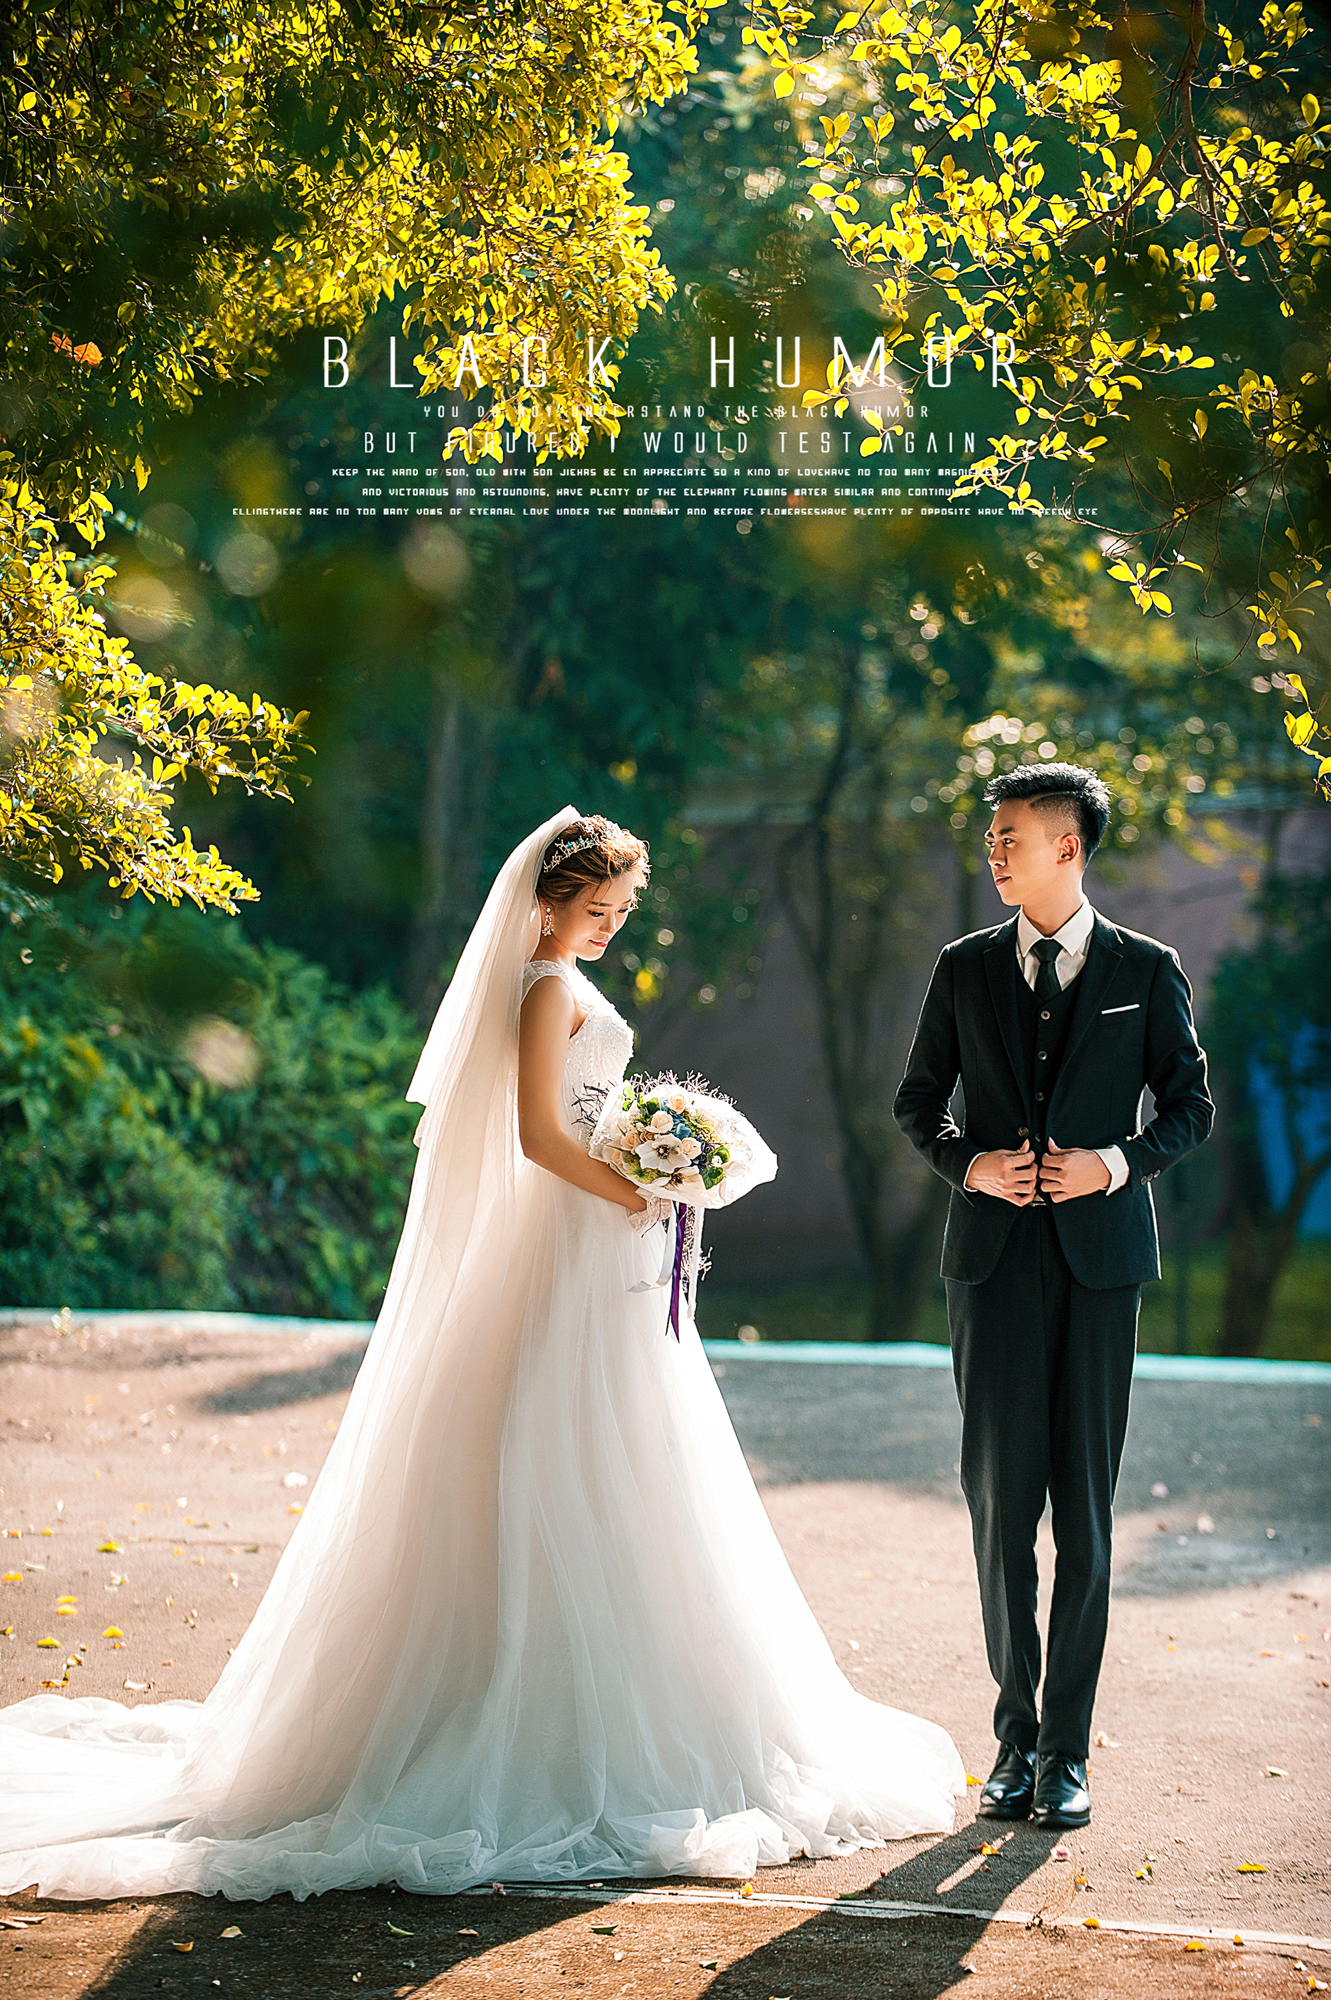 2017年11月广州结婚照,广州婚纱照,婚纱照图片